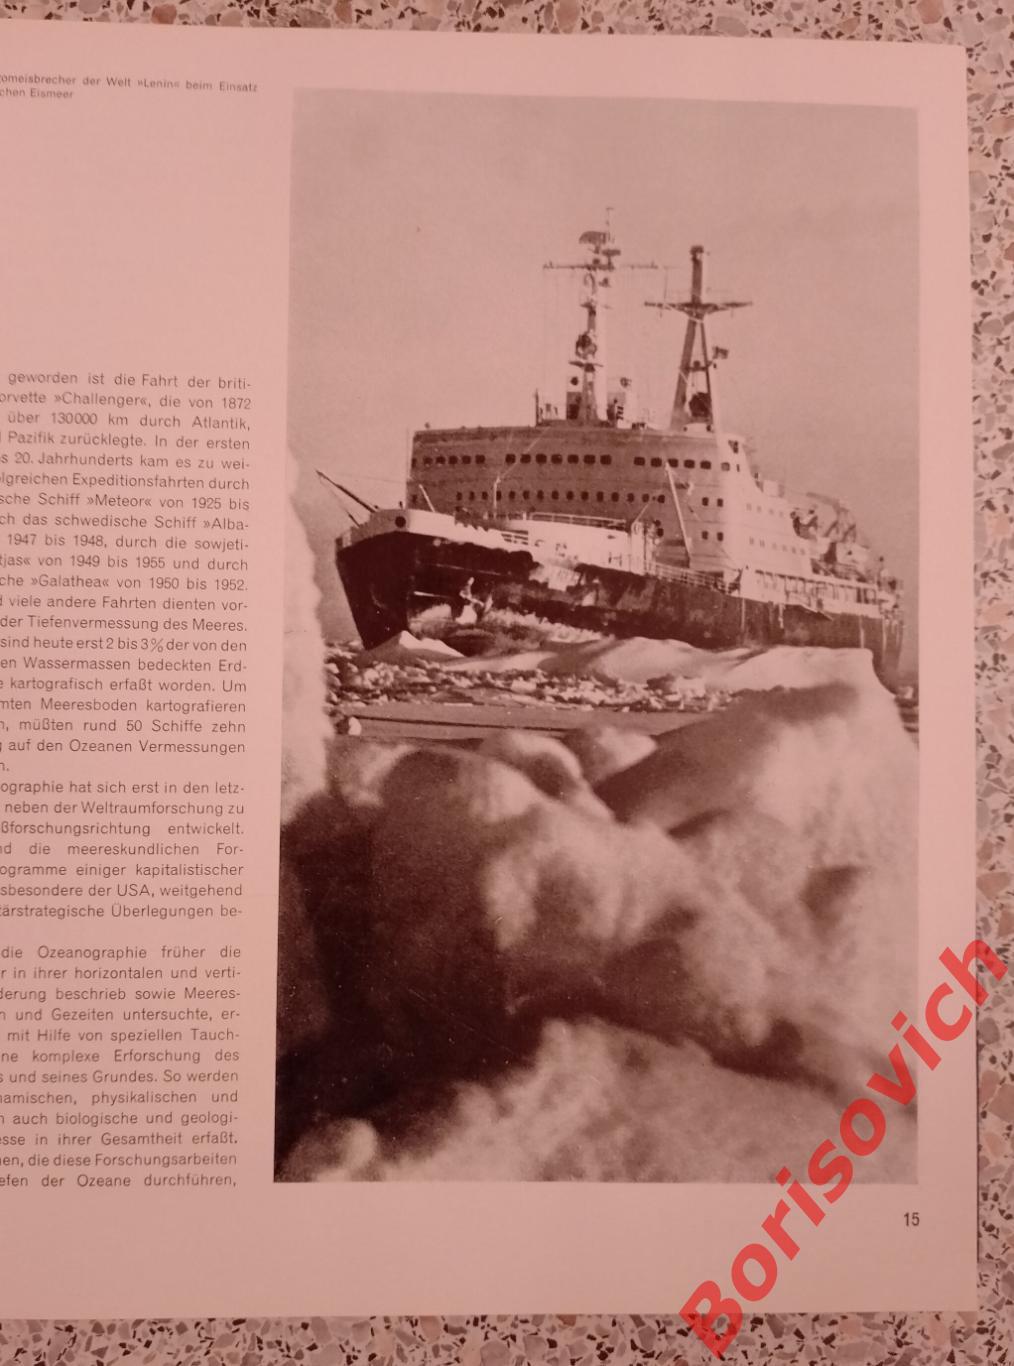 Мореплавание вчера и сегодня 1971 г Seefahrt gestern und heute 271 страница 1